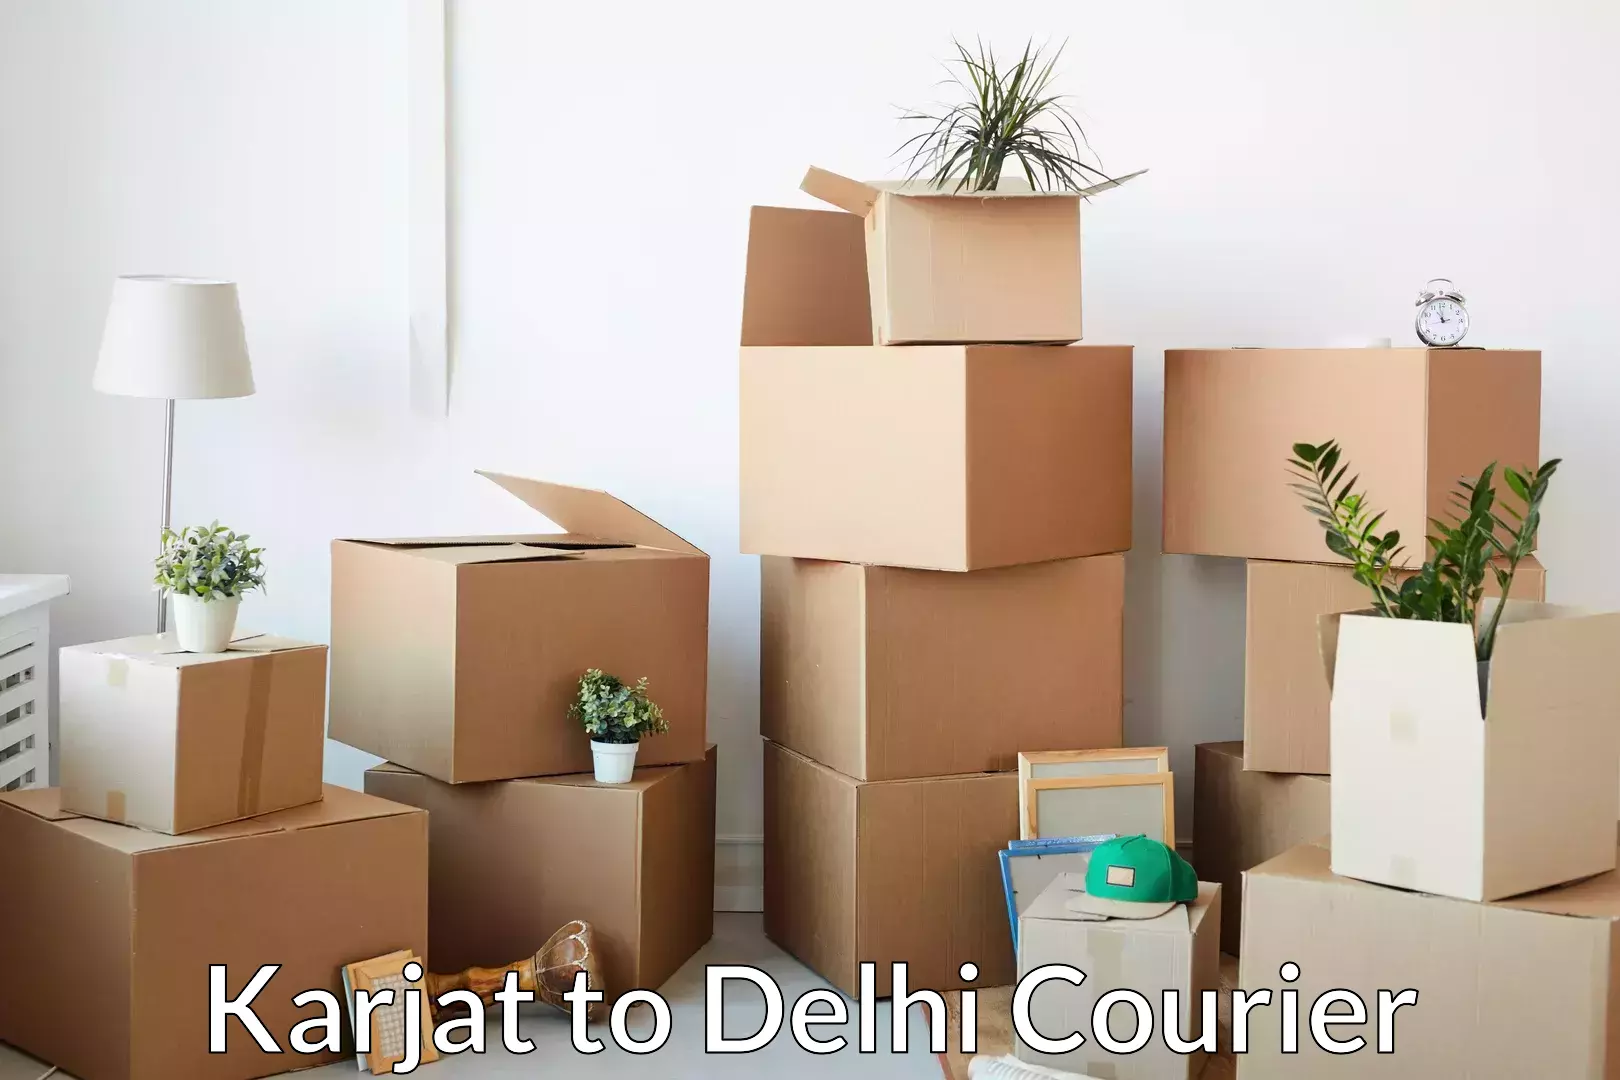 Comprehensive moving assistance Karjat to Delhi